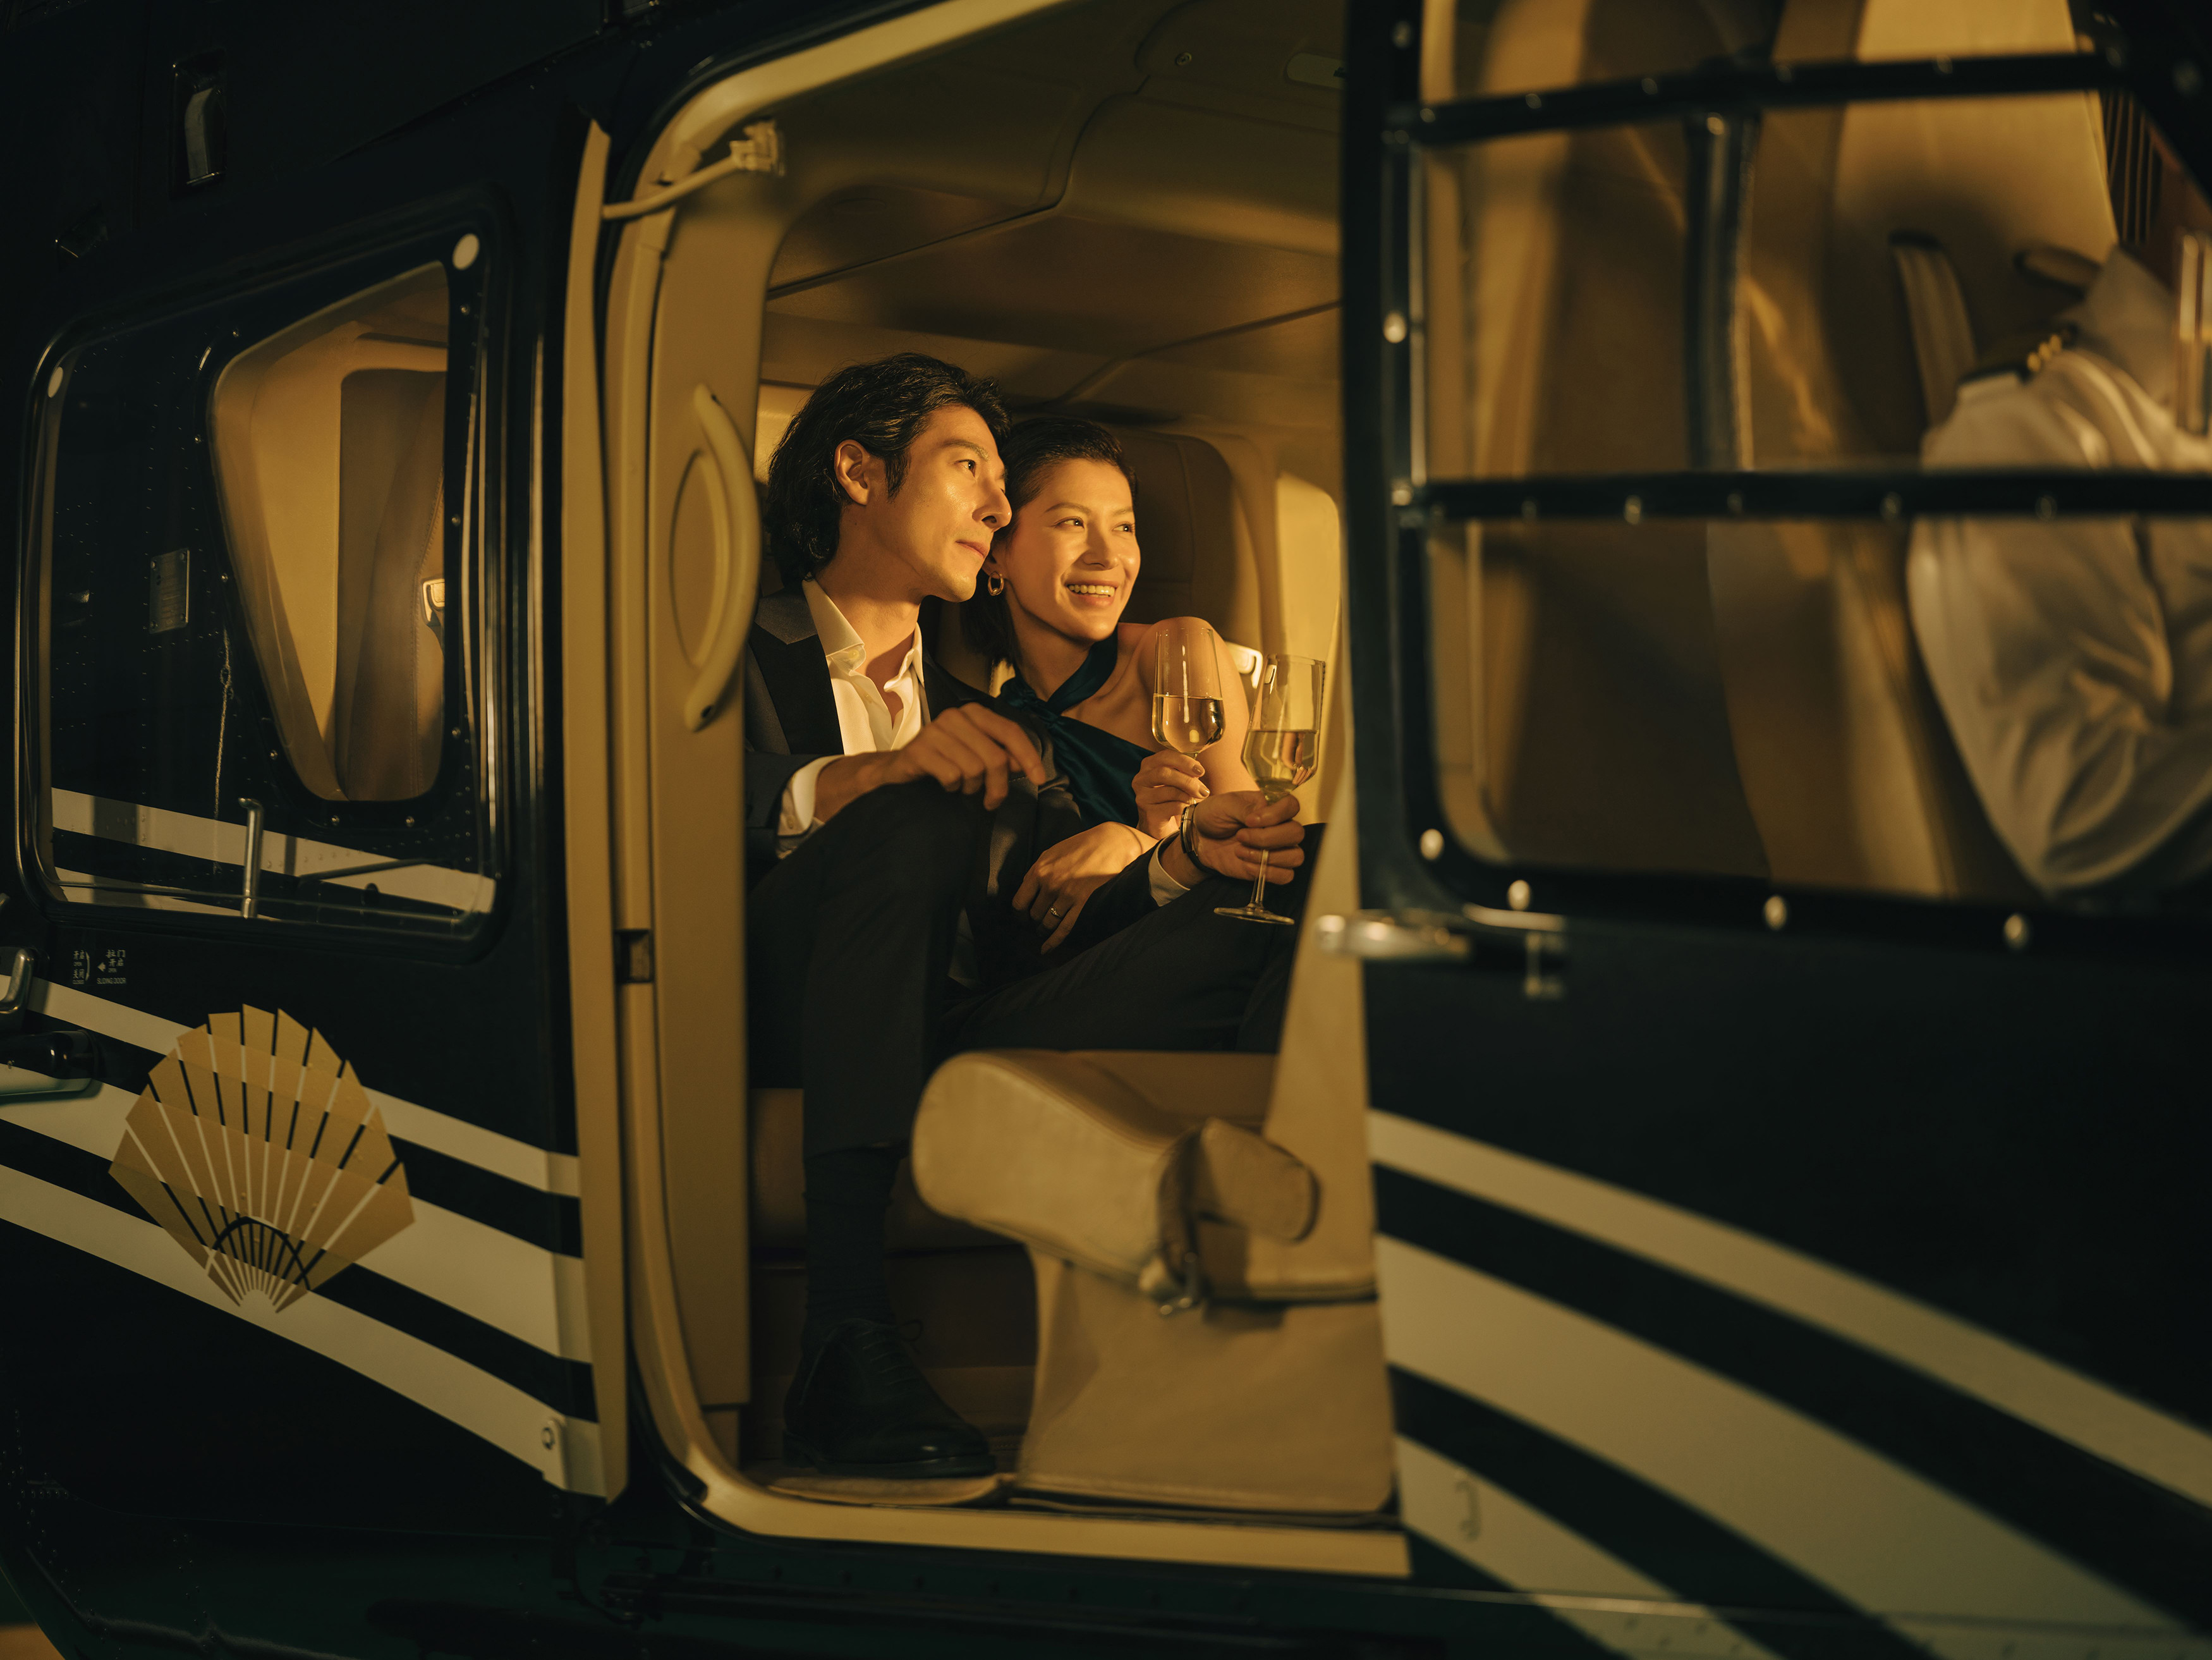 行启新岁 ，心向往之：文华东方酒店集团于新年之际特别献上「心之所向」品牌电影